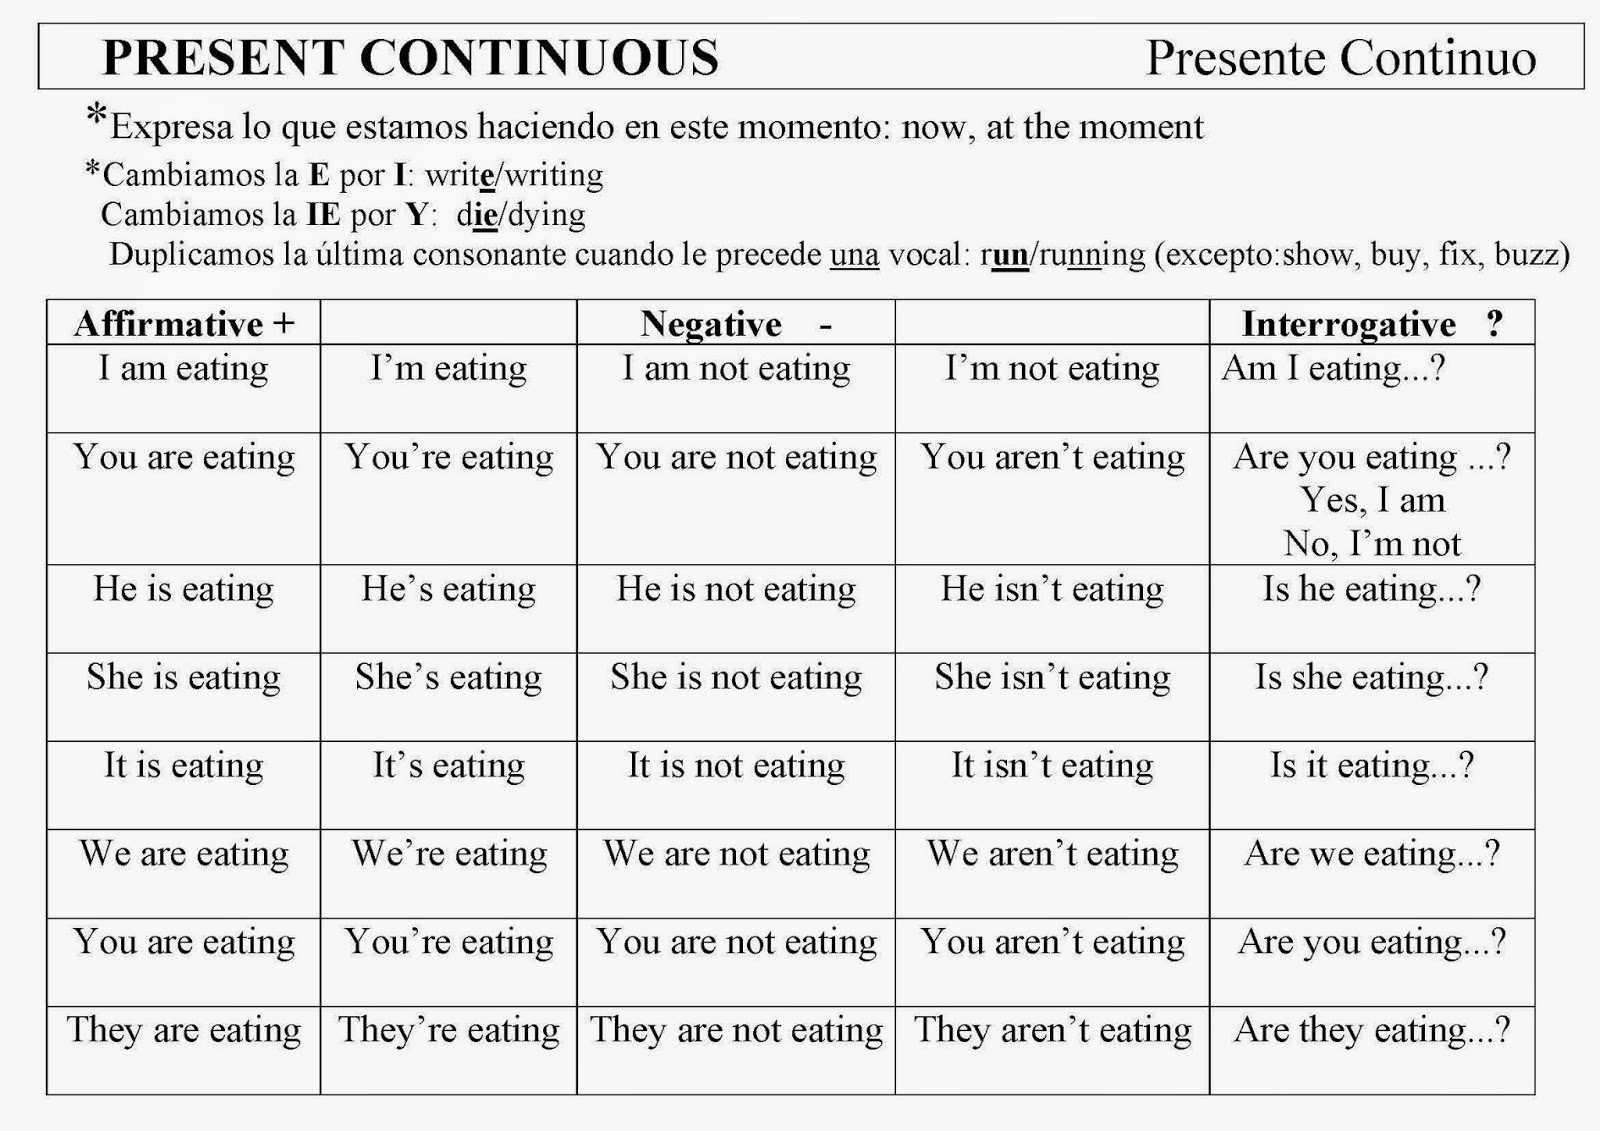 Present continuous самостоятельная 5 класс. Презент континиус. Present Continuous правила. Present Continuous правило. Презент континиус таблица.